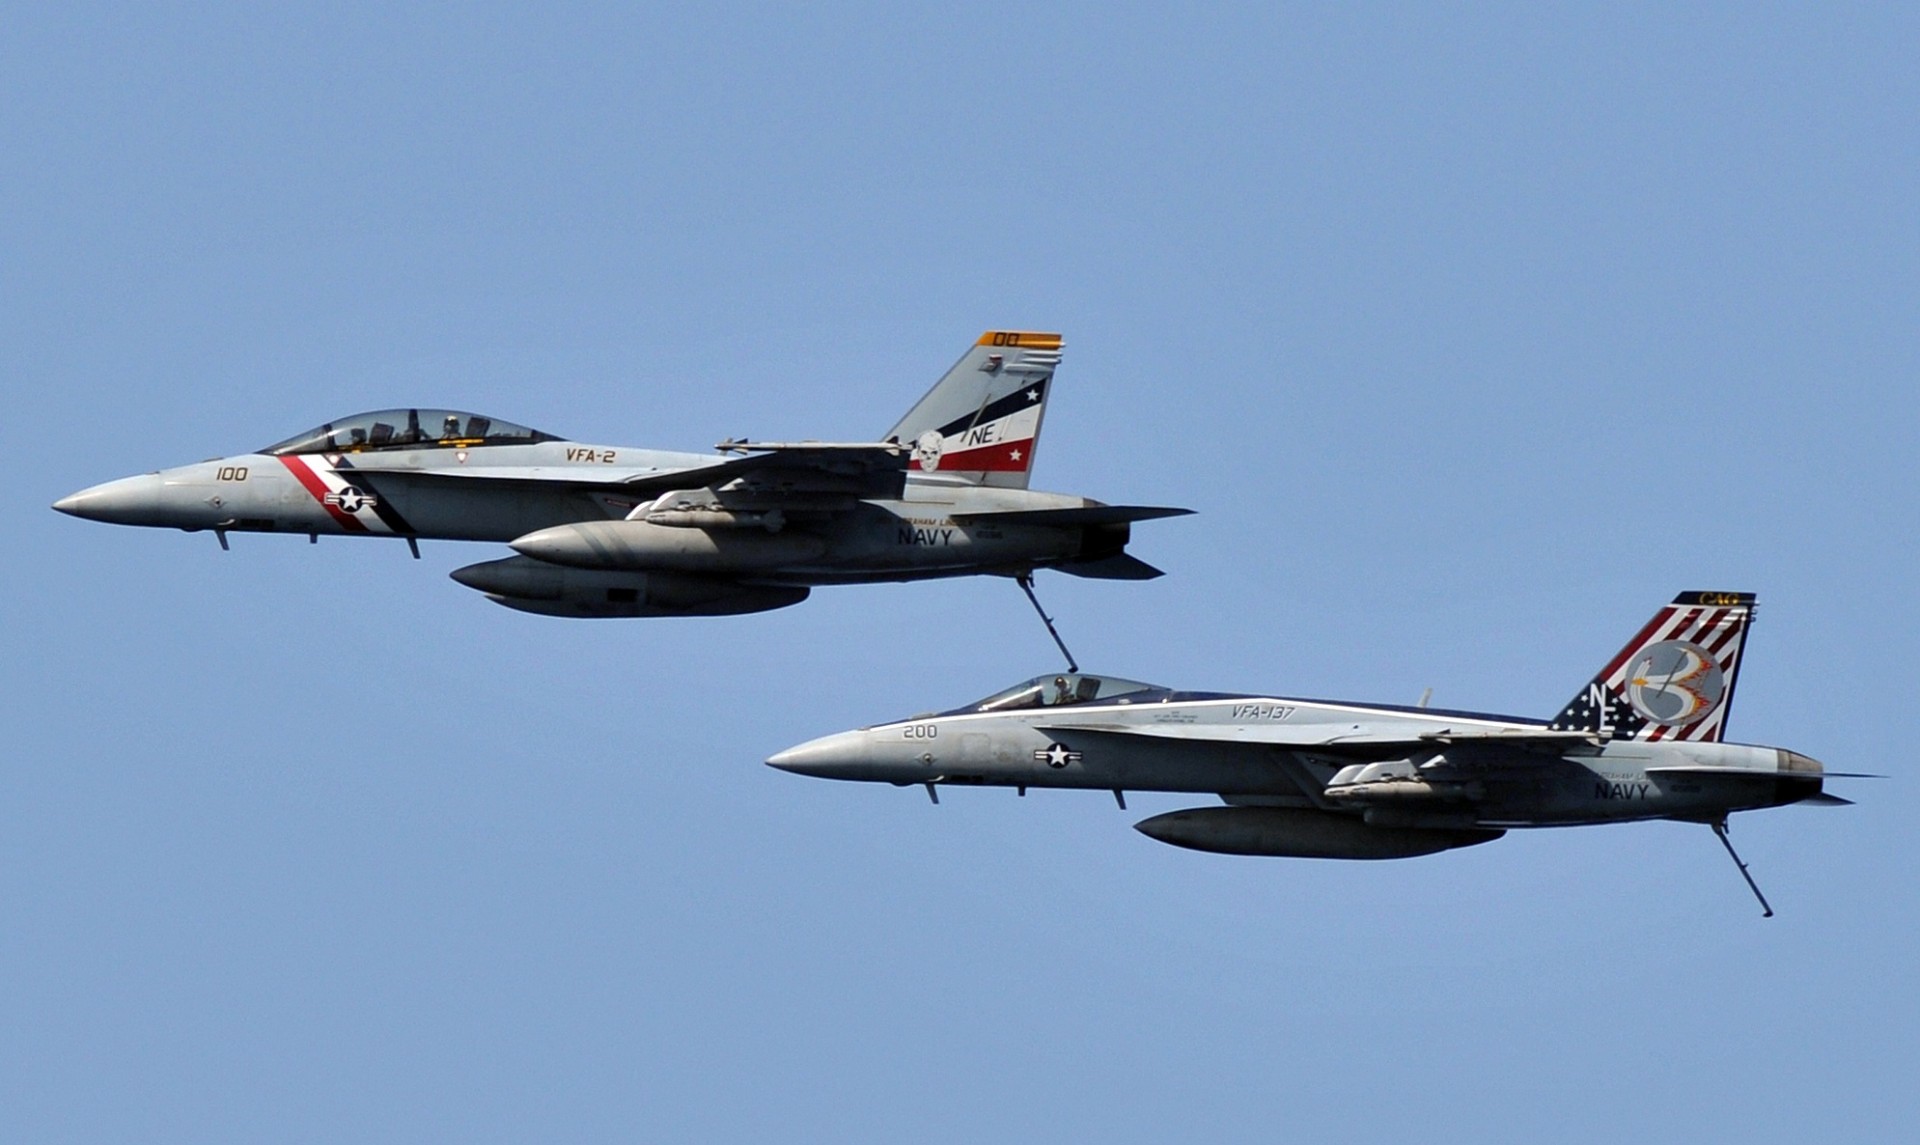 Samoloty F/A-18 otrzymają nowy system zakłóceń radioelektronicznych za 125 milionów dolarów – US Navy